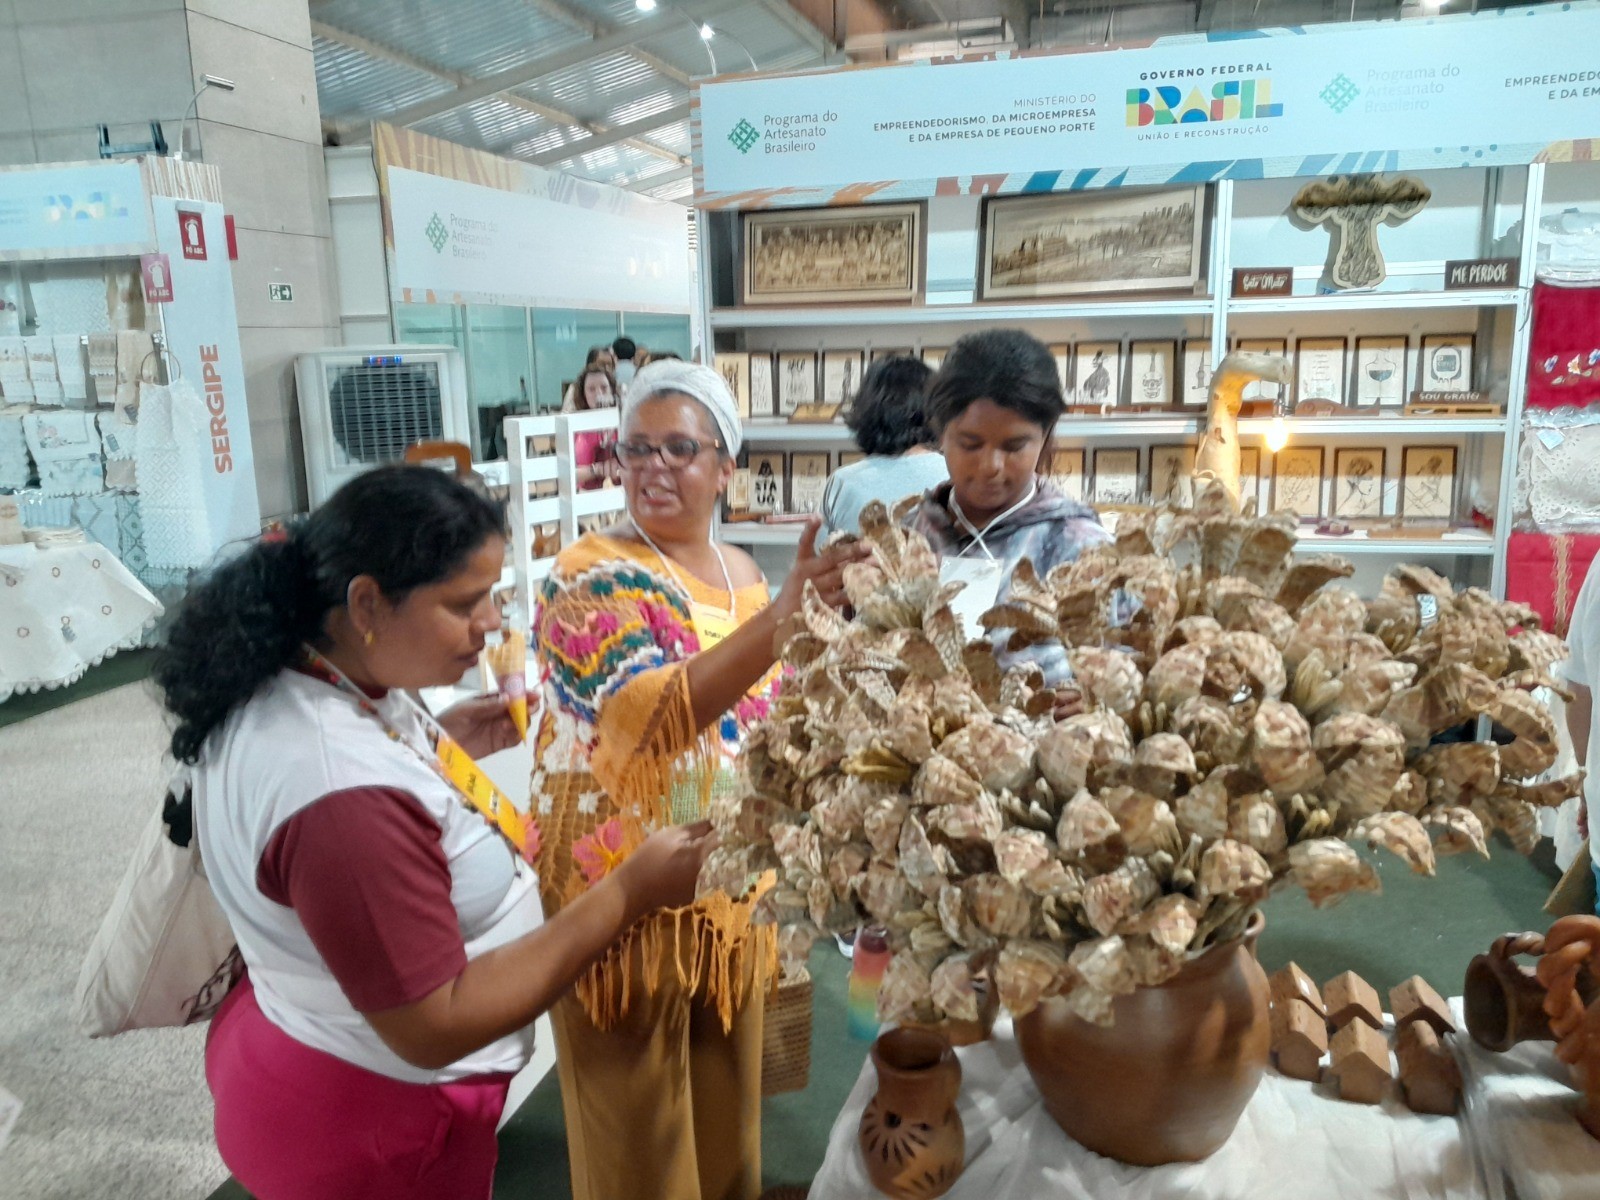 Excursão leva artesãs da área rural ao Salão do Artesanato de Brasília